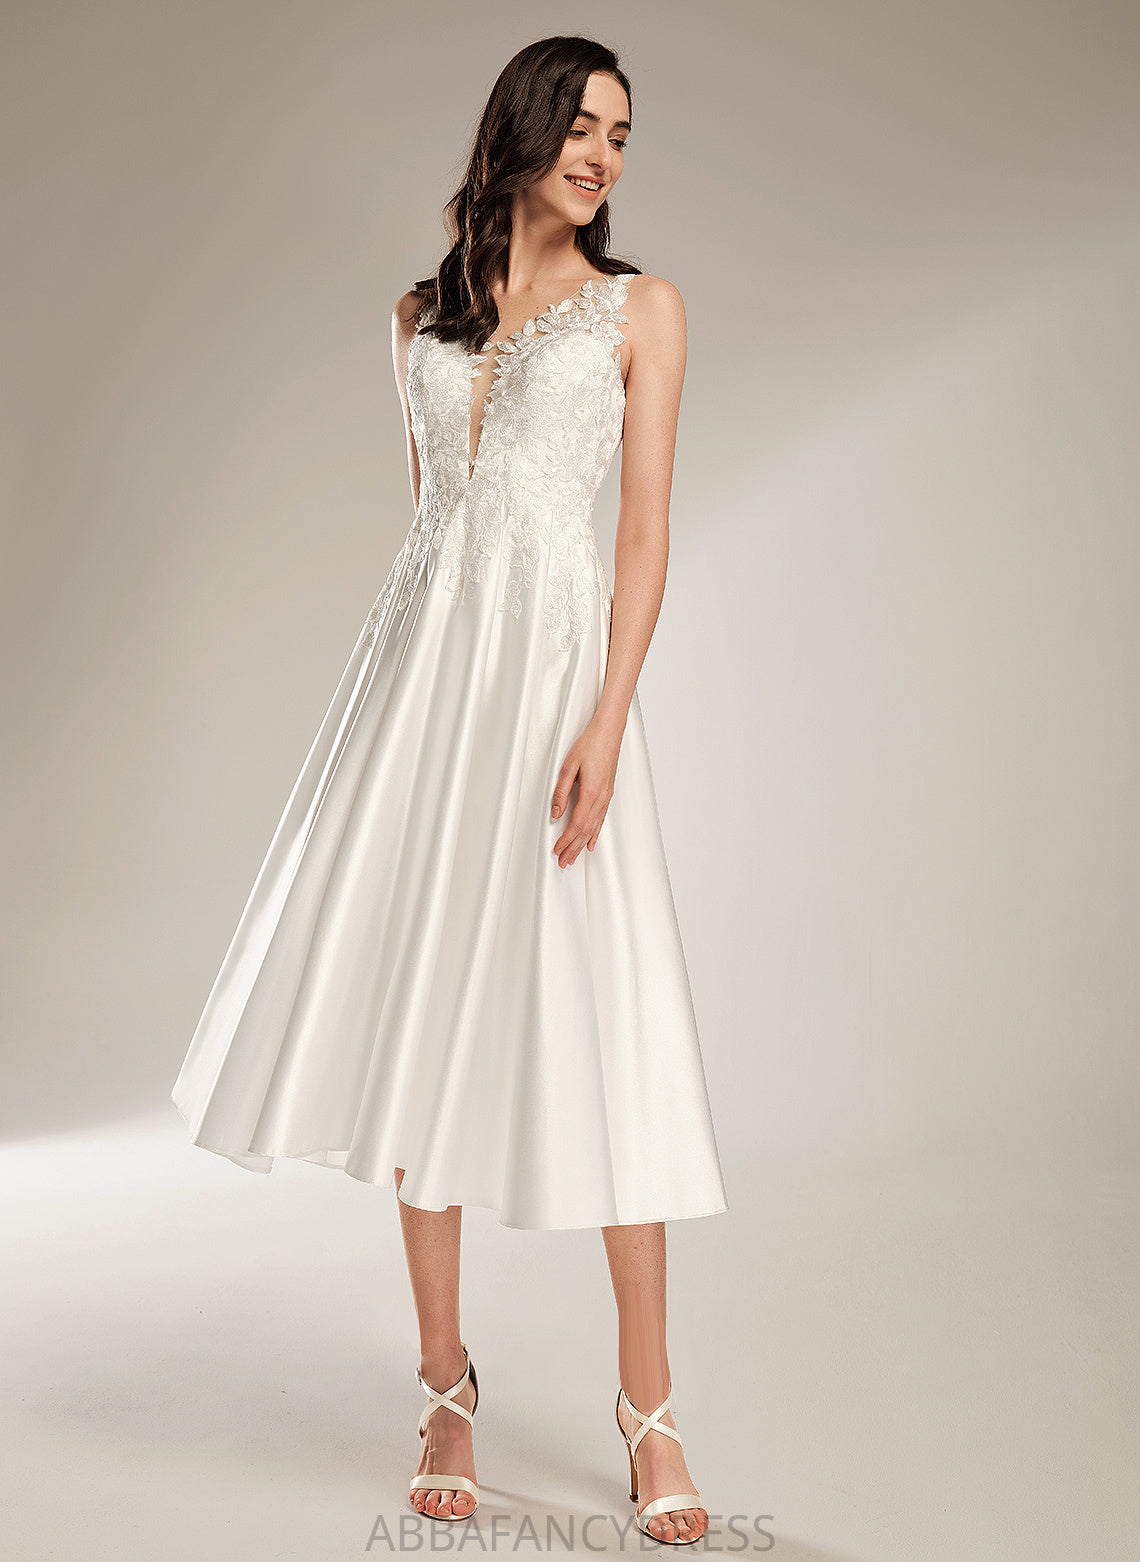 V-neck With Arely Dress Wedding Tea-Length A-Line Wedding Dresses Pockets